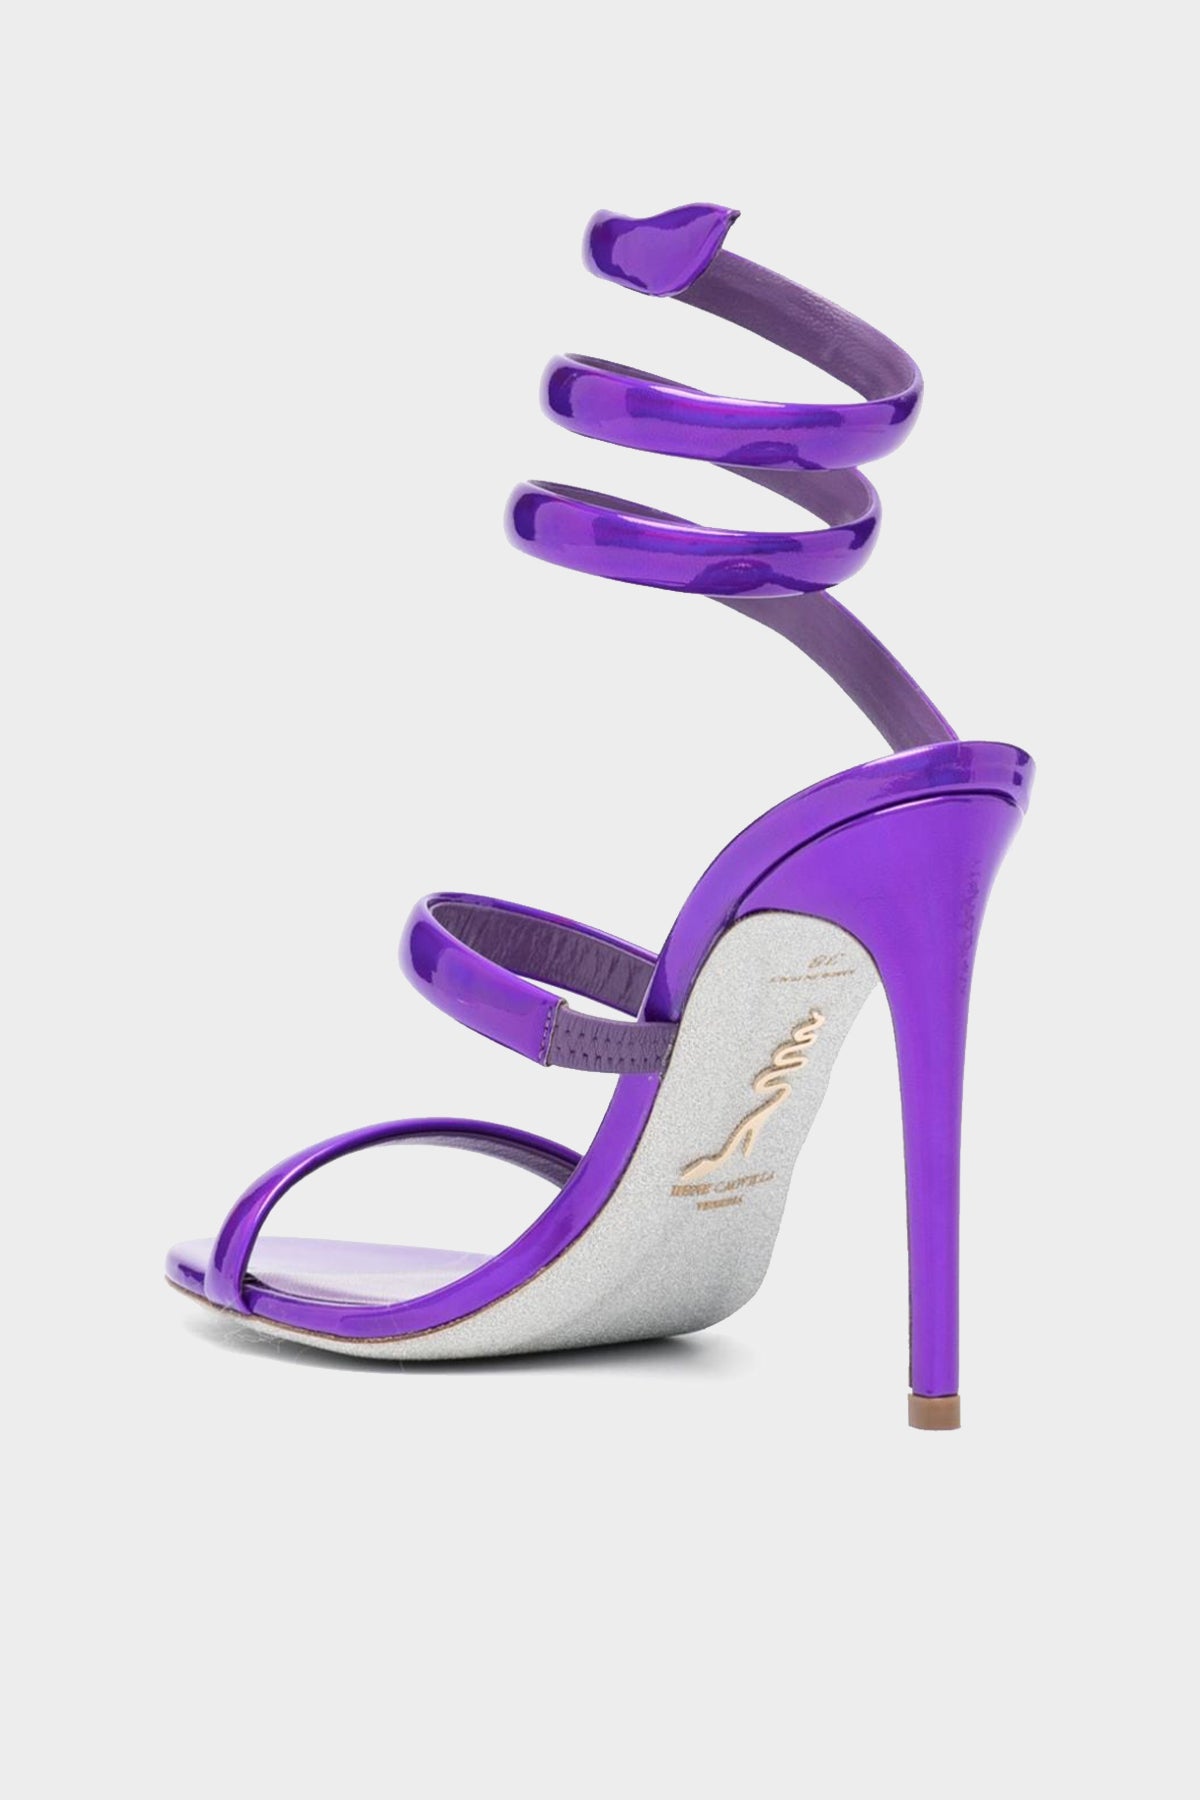 Cleo Sandal 105 in Violet - shop-olivia.com